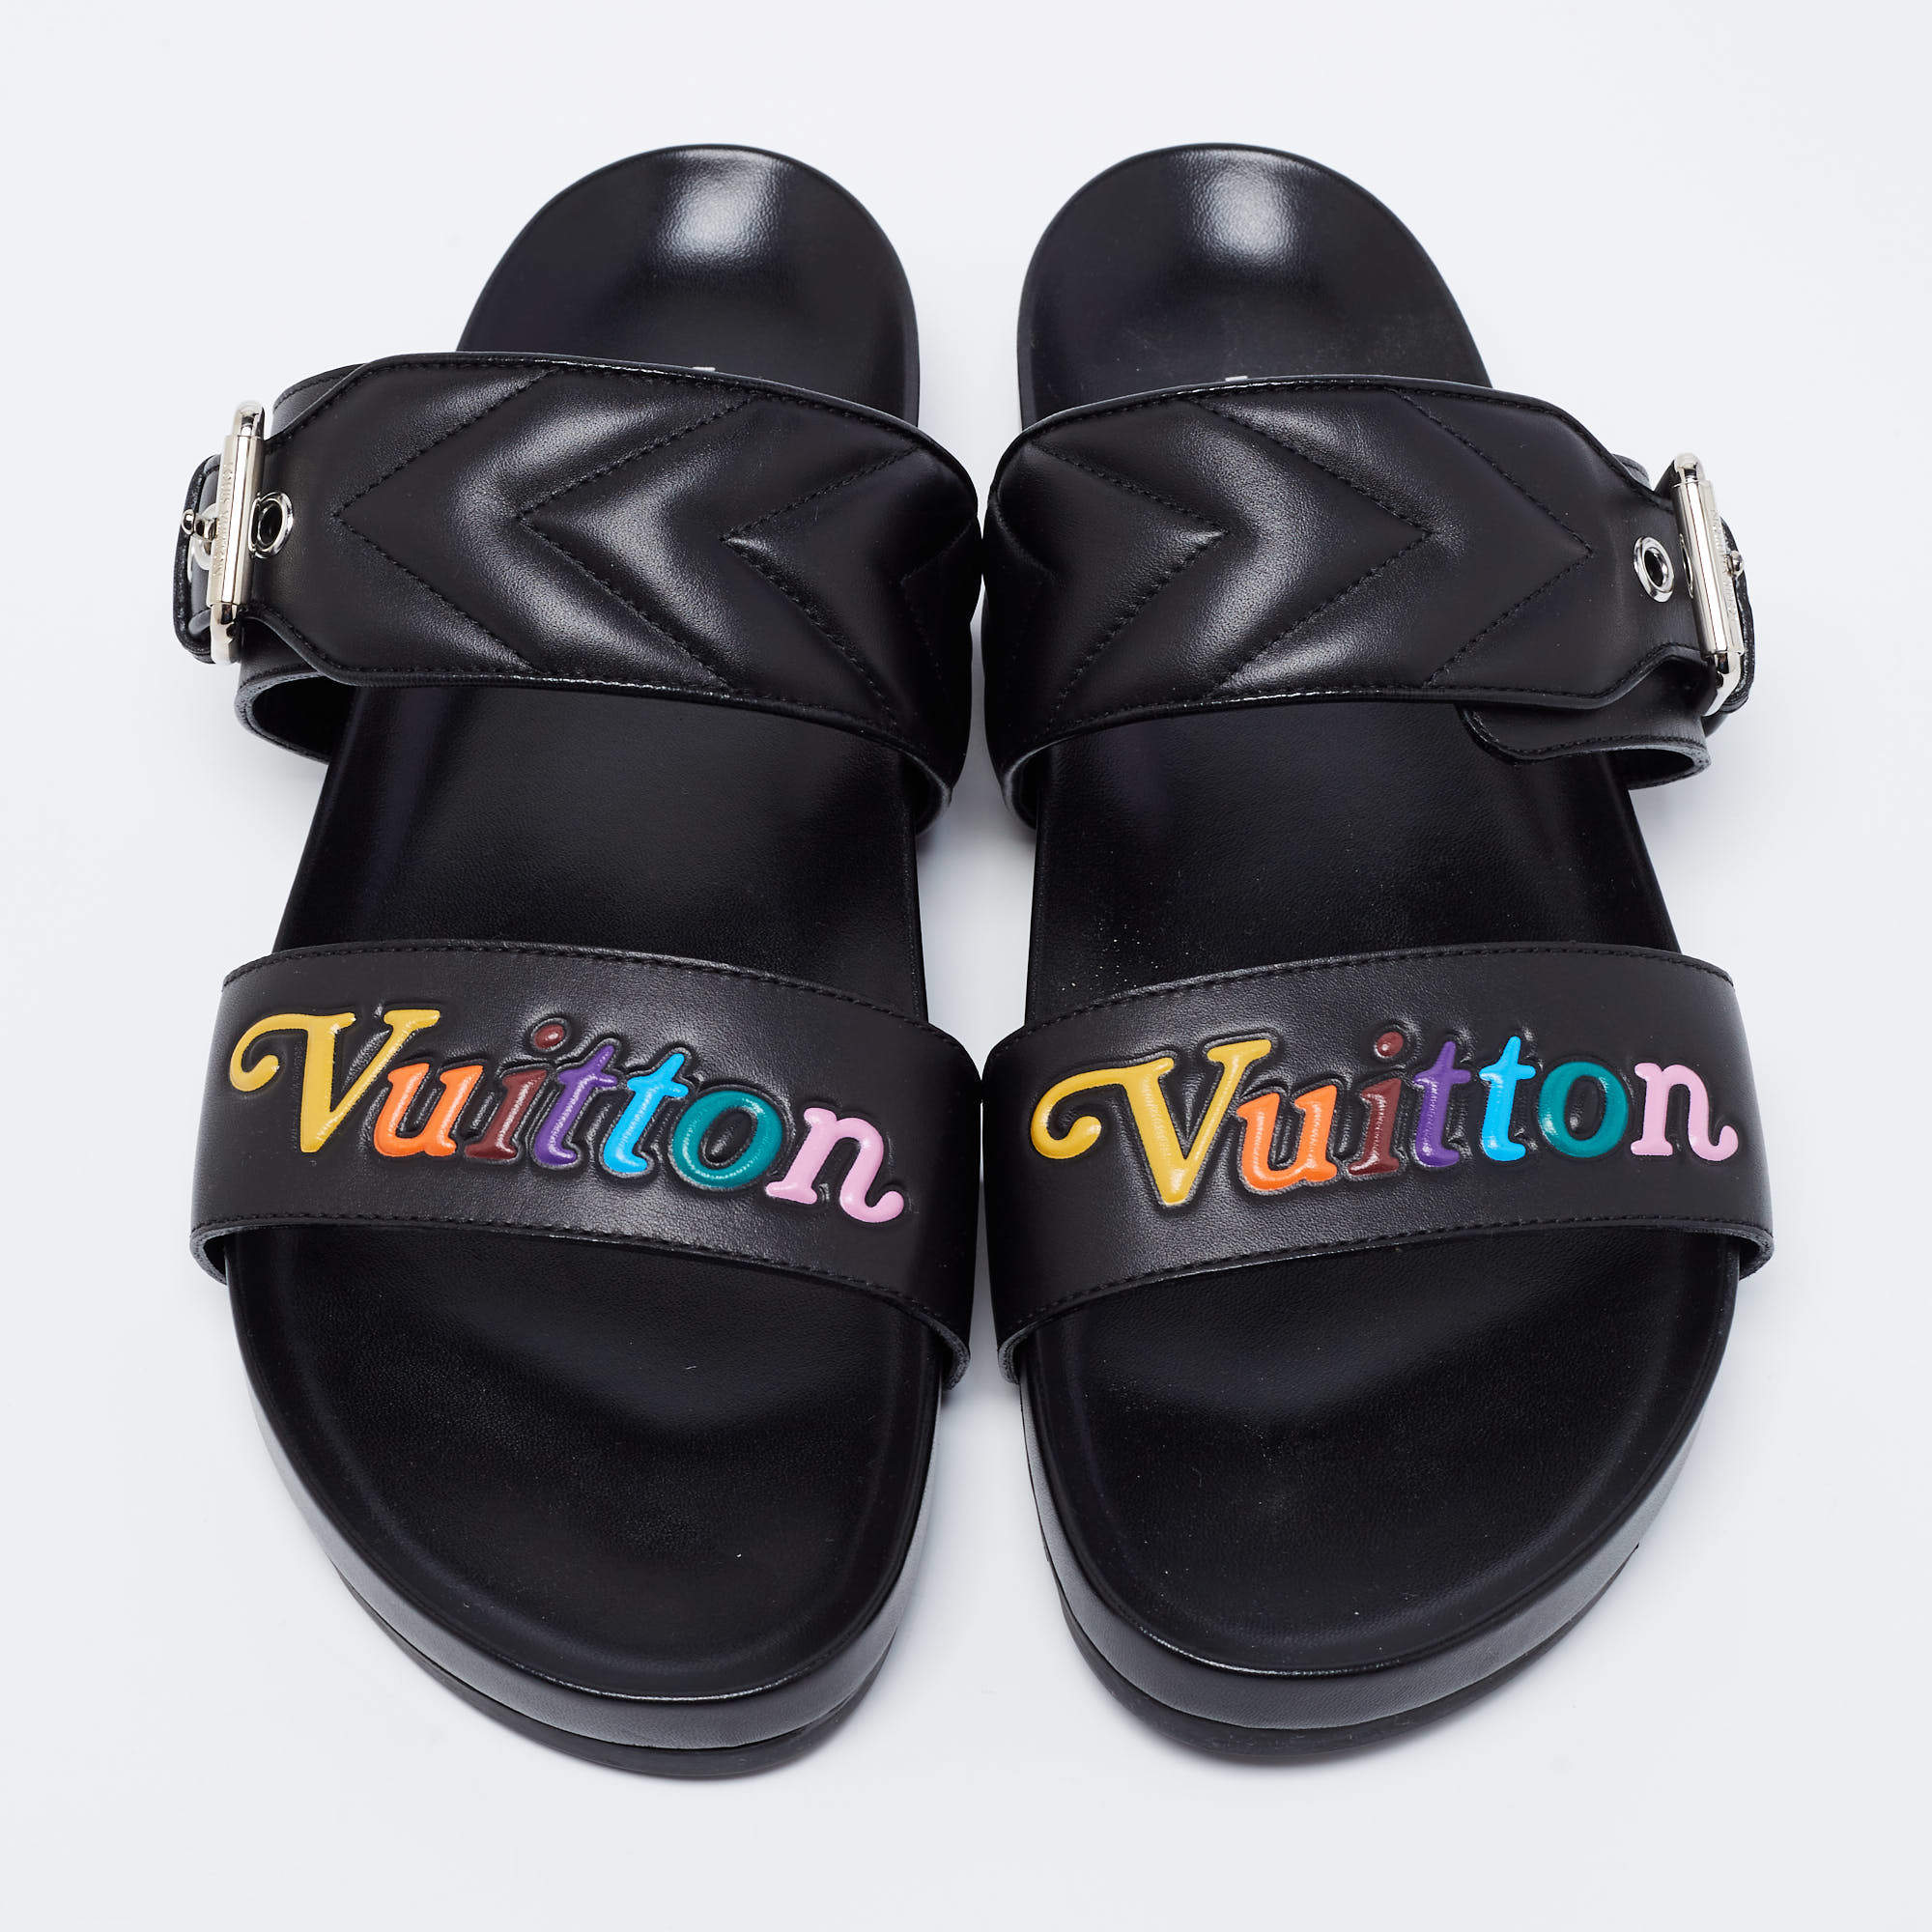 Louis Vuitton Black Leather Wave Bom Dia Mule Sandals Size 41